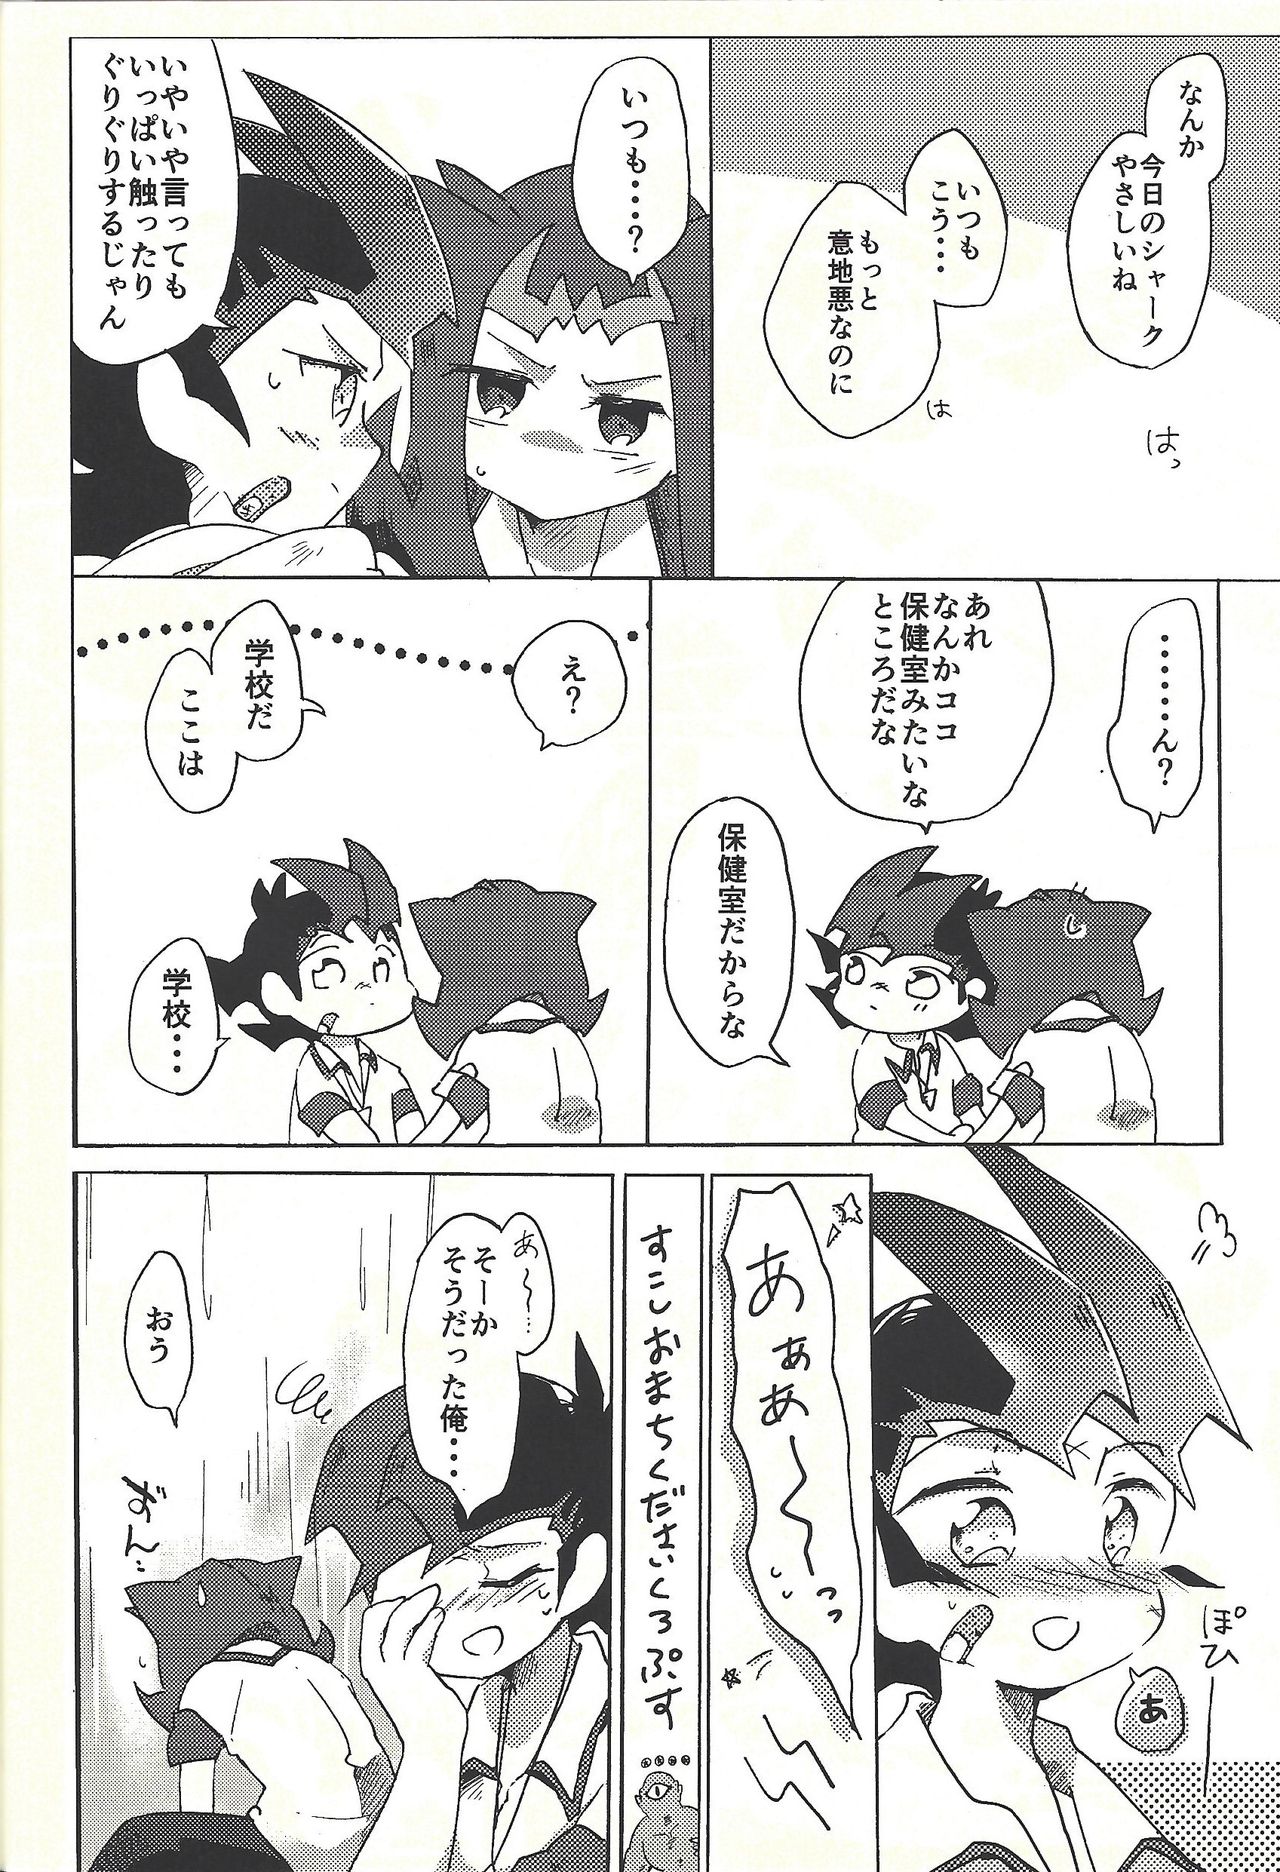 (Ore no Turn vs. 2019) [Wakaru mushi (623)] ☓ Yume resu fumin rēsu (Yu-Gi-Oh! ZEXAL) page 25 full